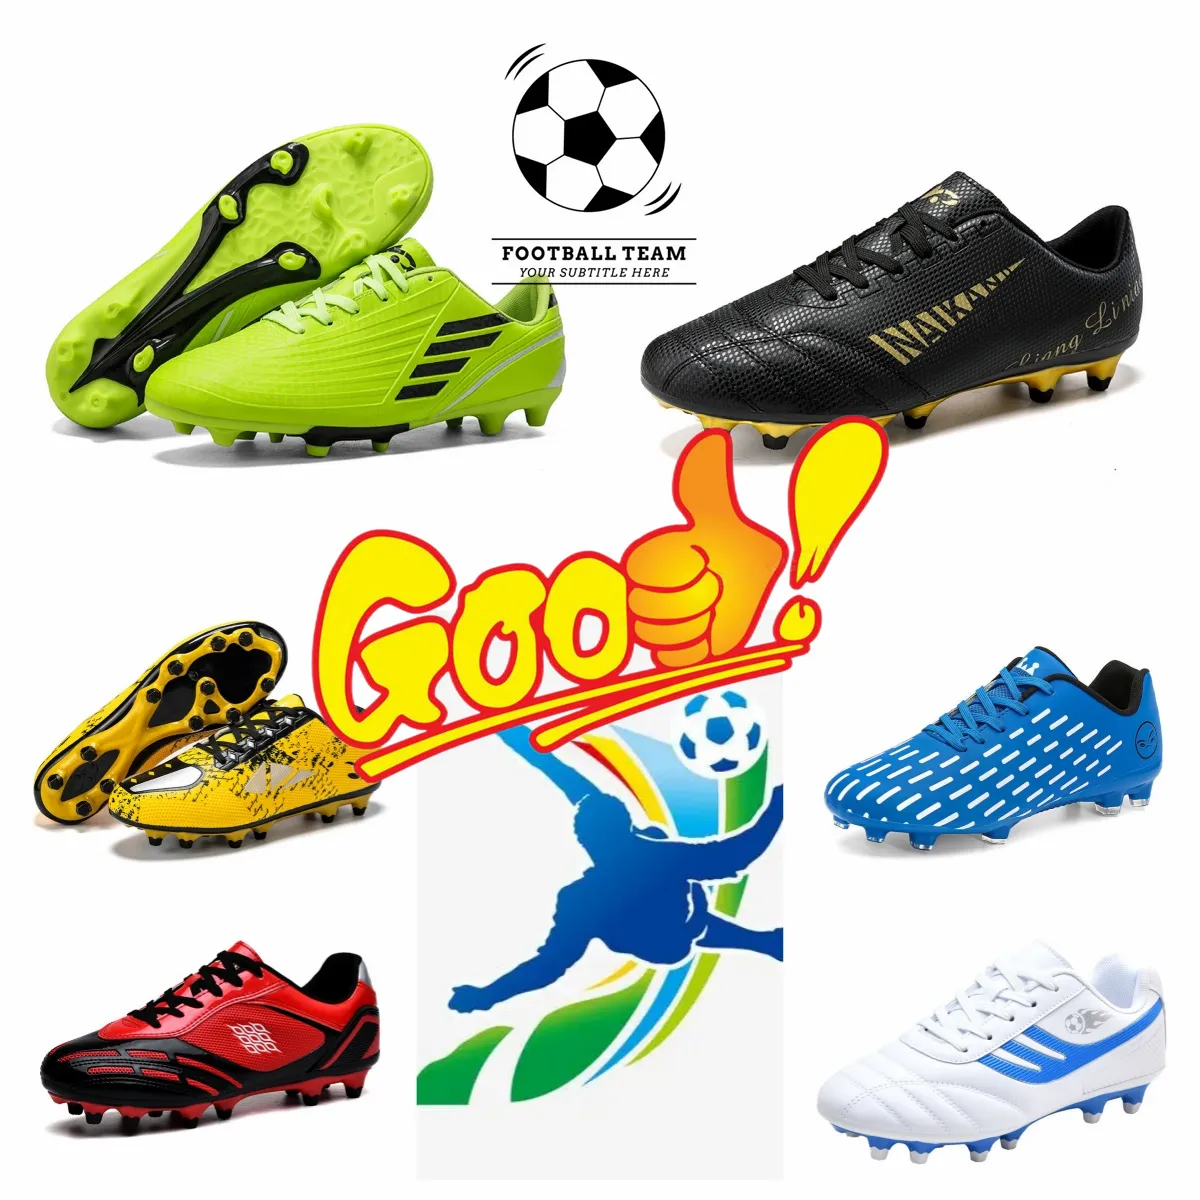 Venda de sapatos masculinos de alta qualidade para atividades ao ar livre, botas de futebol, almofada de ar com borda enrolada, absorção de choque e sapatos antiderrapantes 35-45 96833